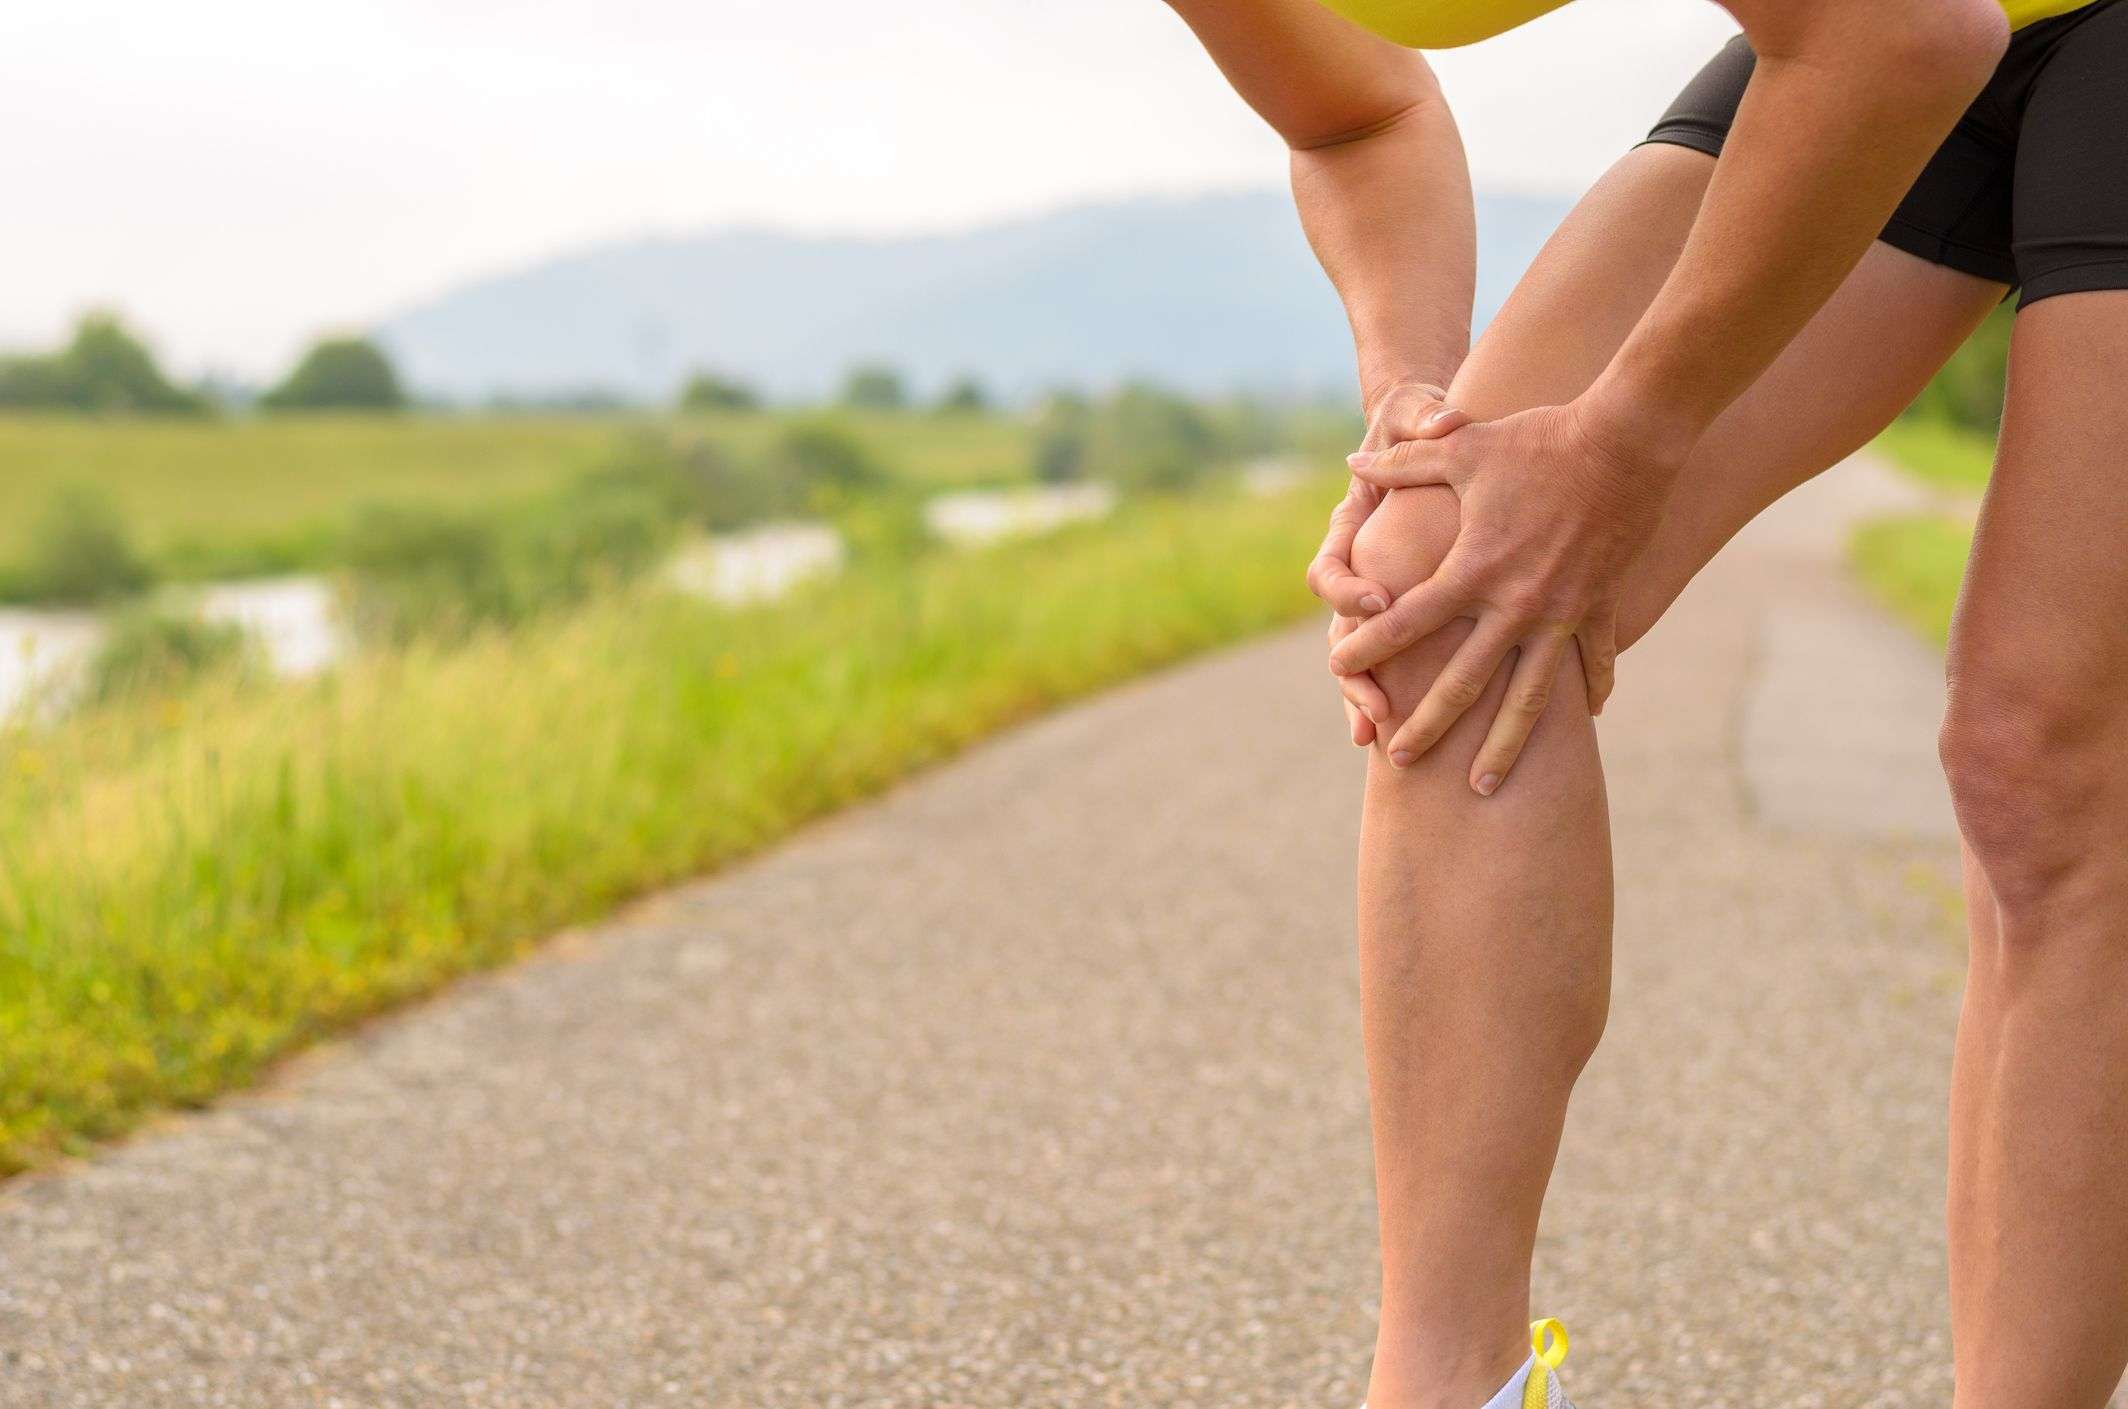 Why Do I Feel Knee Pain When Running?